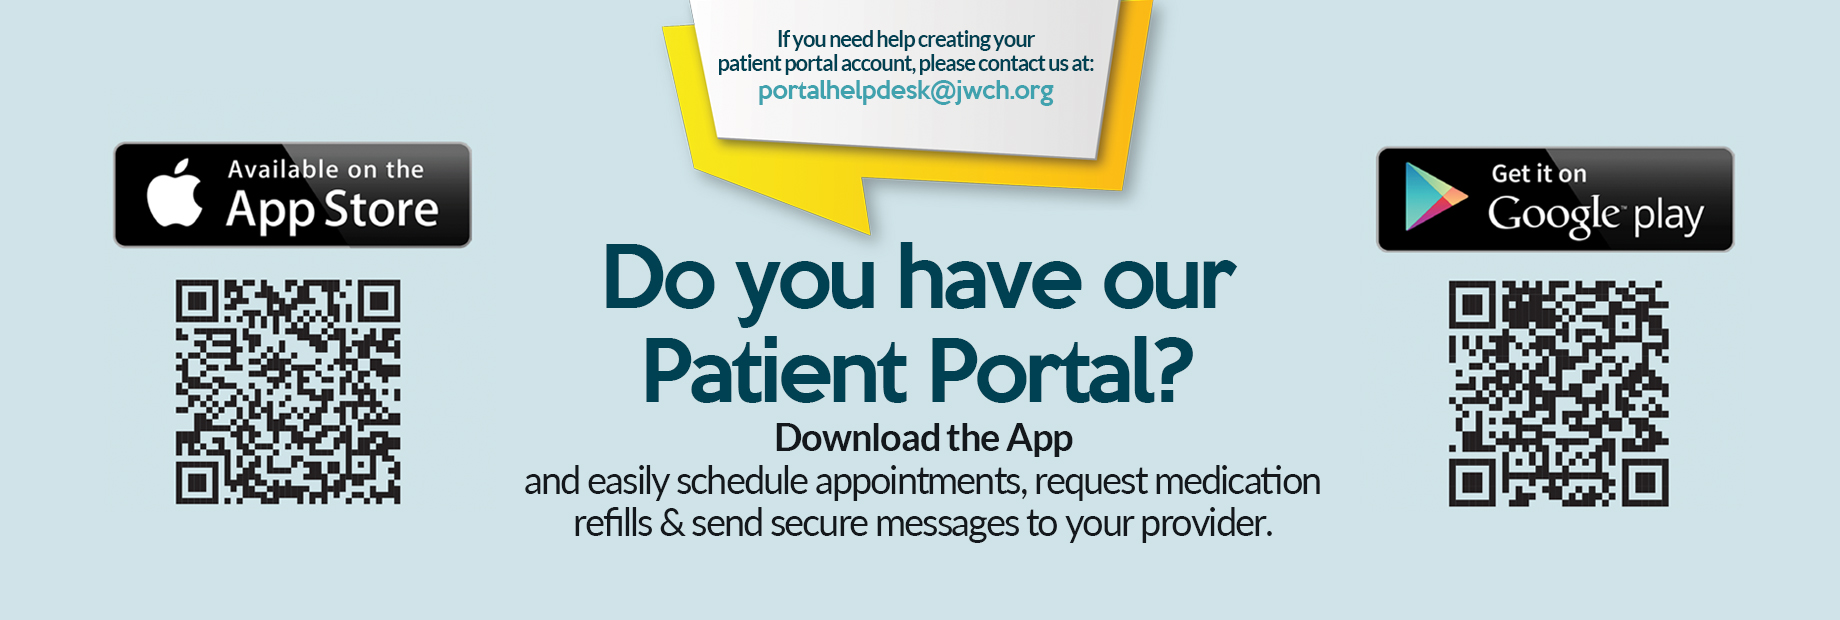 Do you have our patient portal?